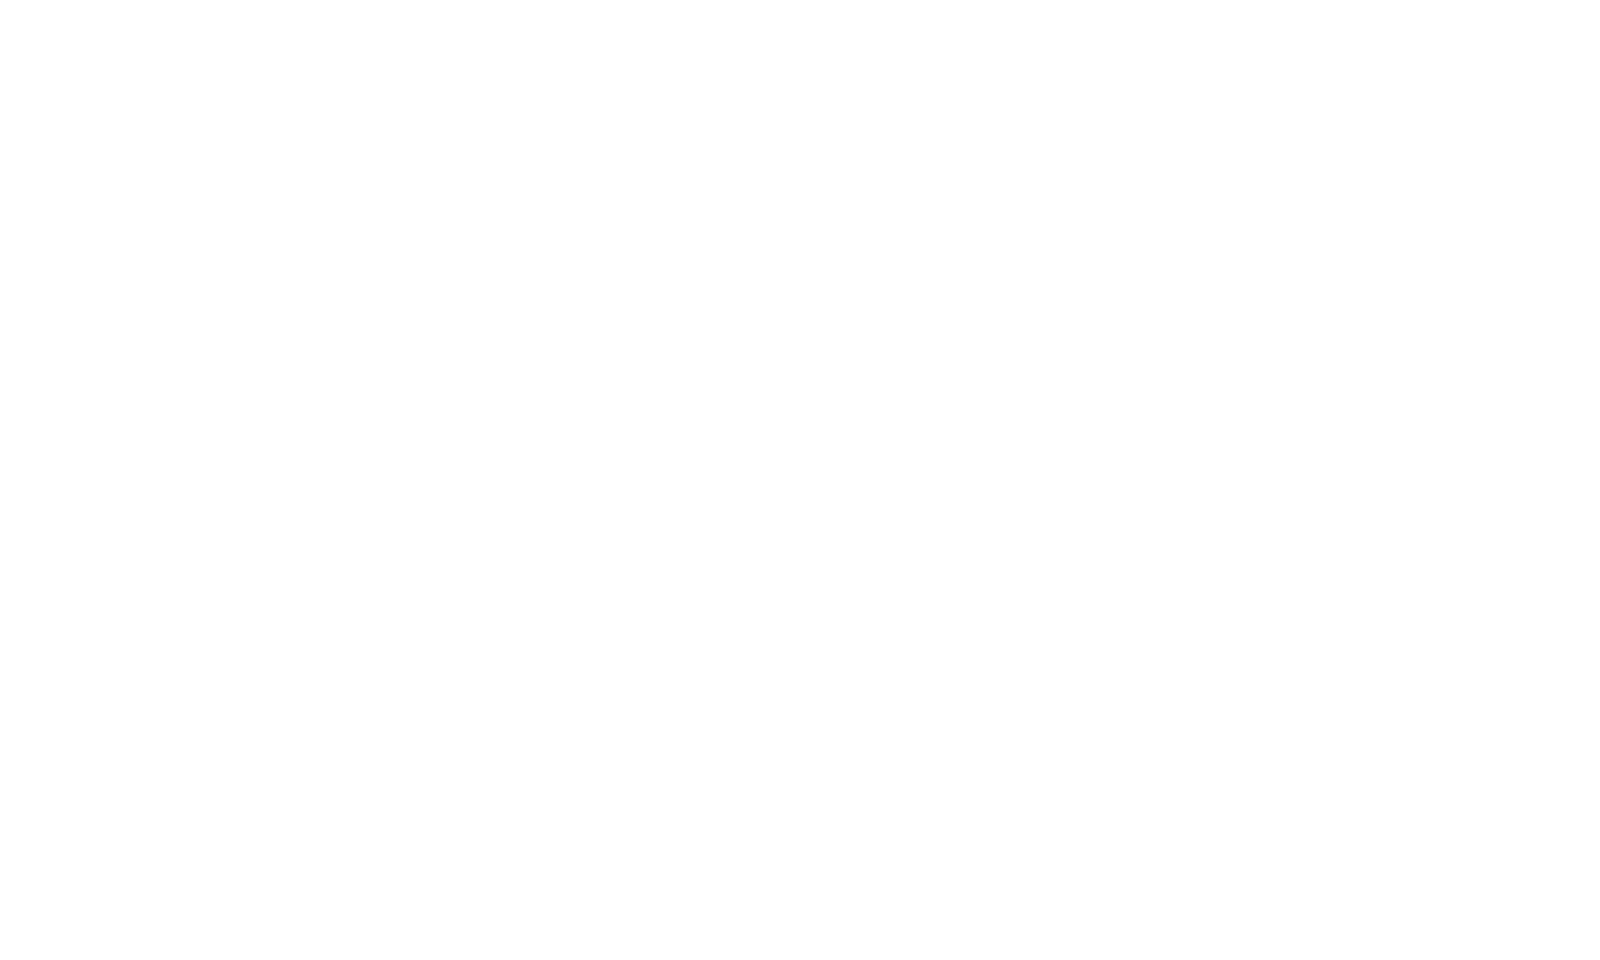 Doink!